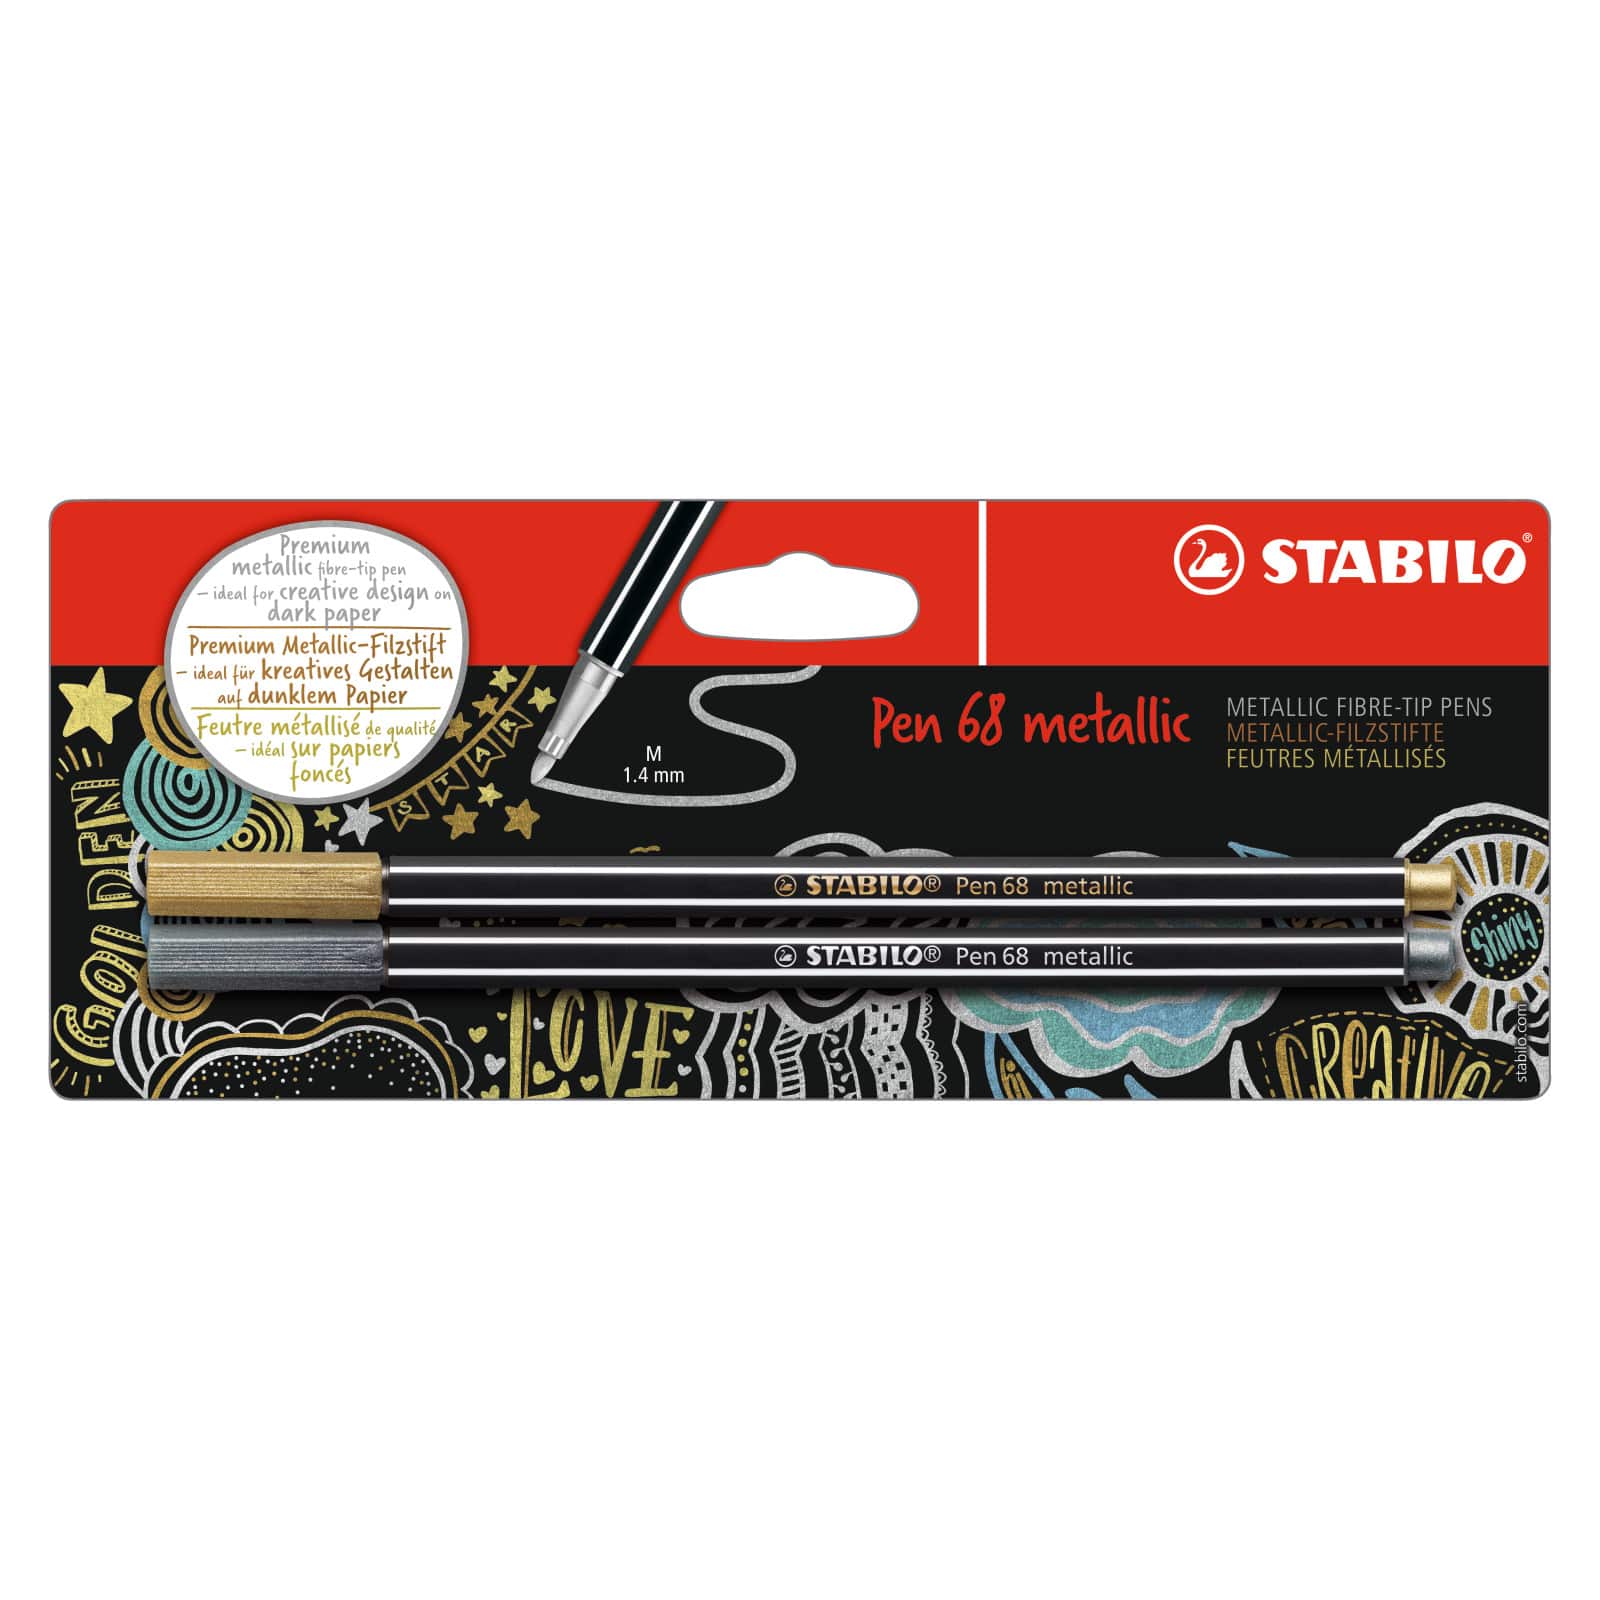 8 Packs: 2 ct. (16 total) STABILO&#xAE; Pen 68 Metallic Pens